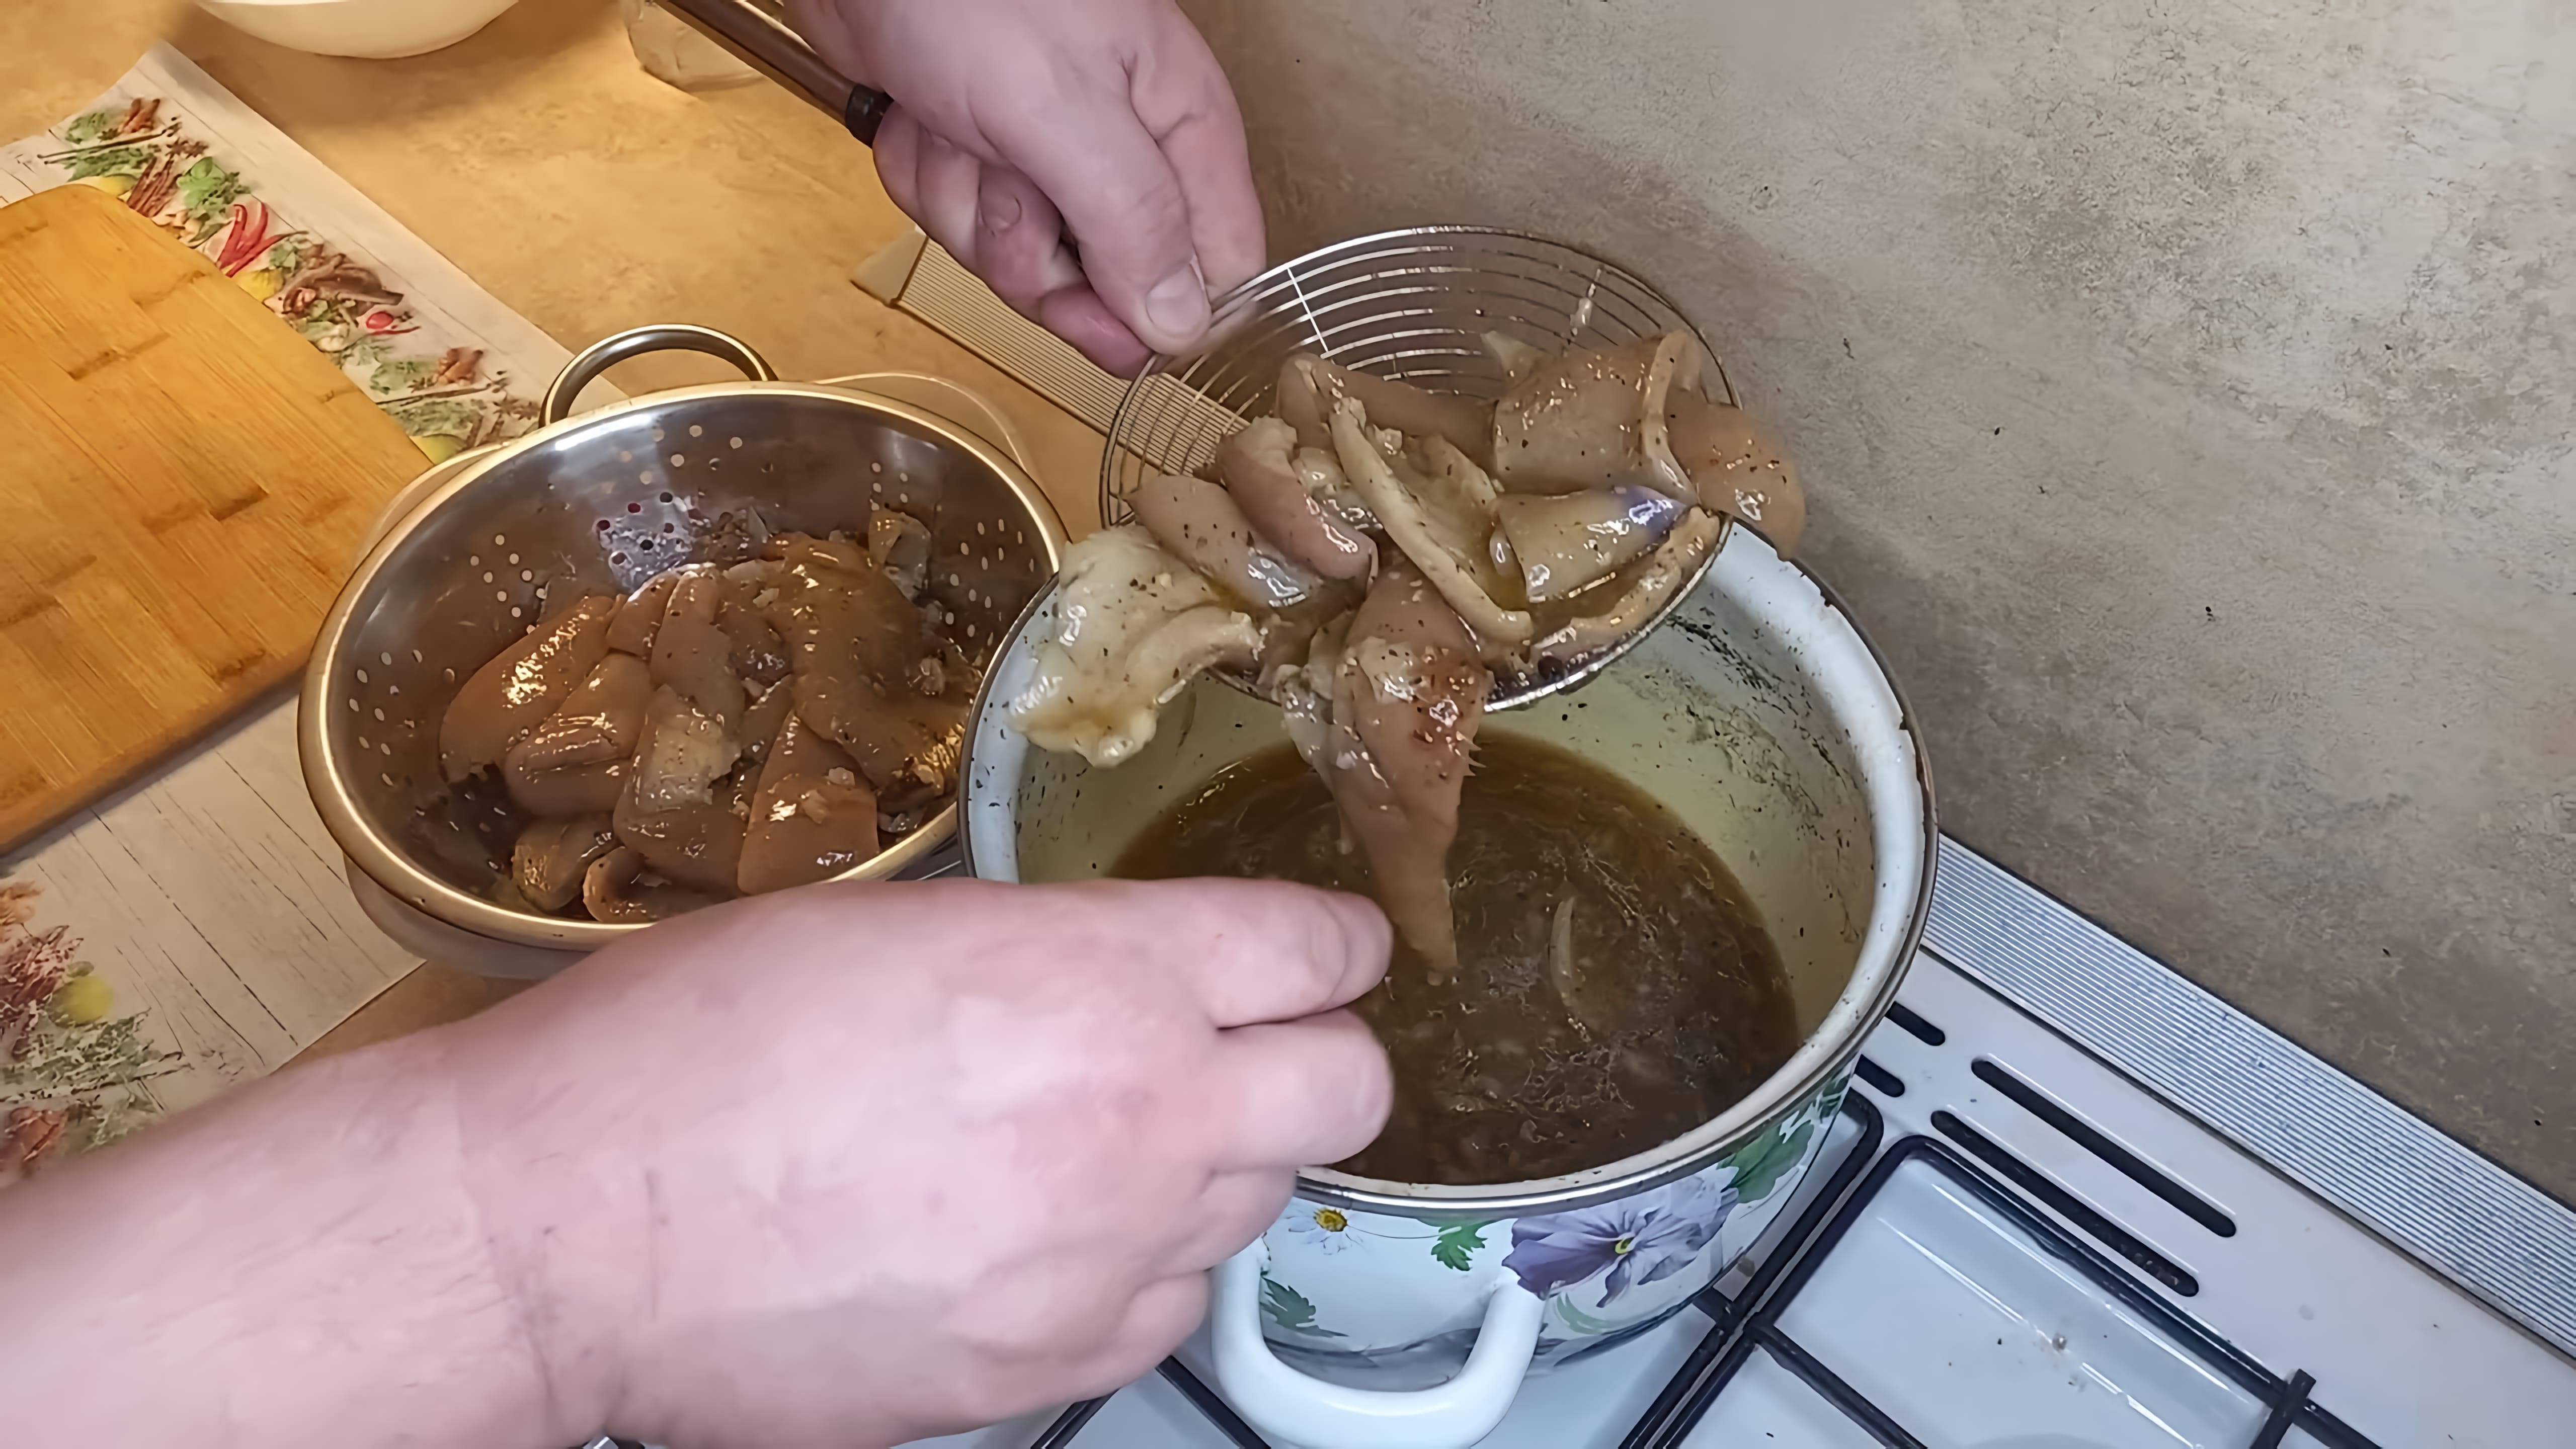 В этом видео демонстрируется процесс приготовления свиной шкурки в качестве закуски